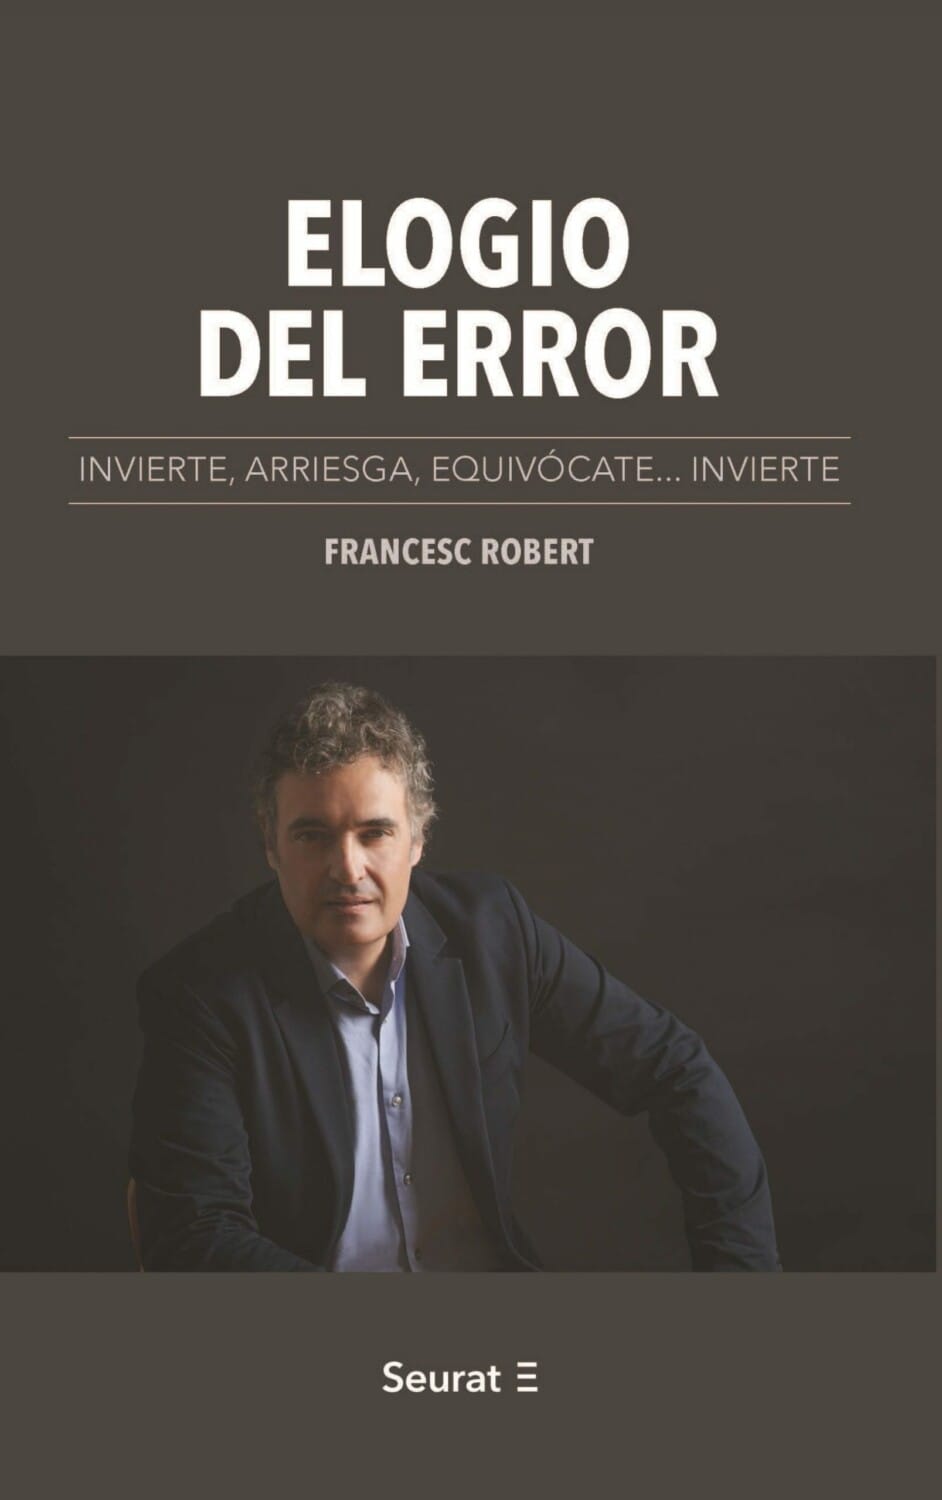 Francesc Robert convierte el error en aprendizaje en su ensayo 'Elogio del error'